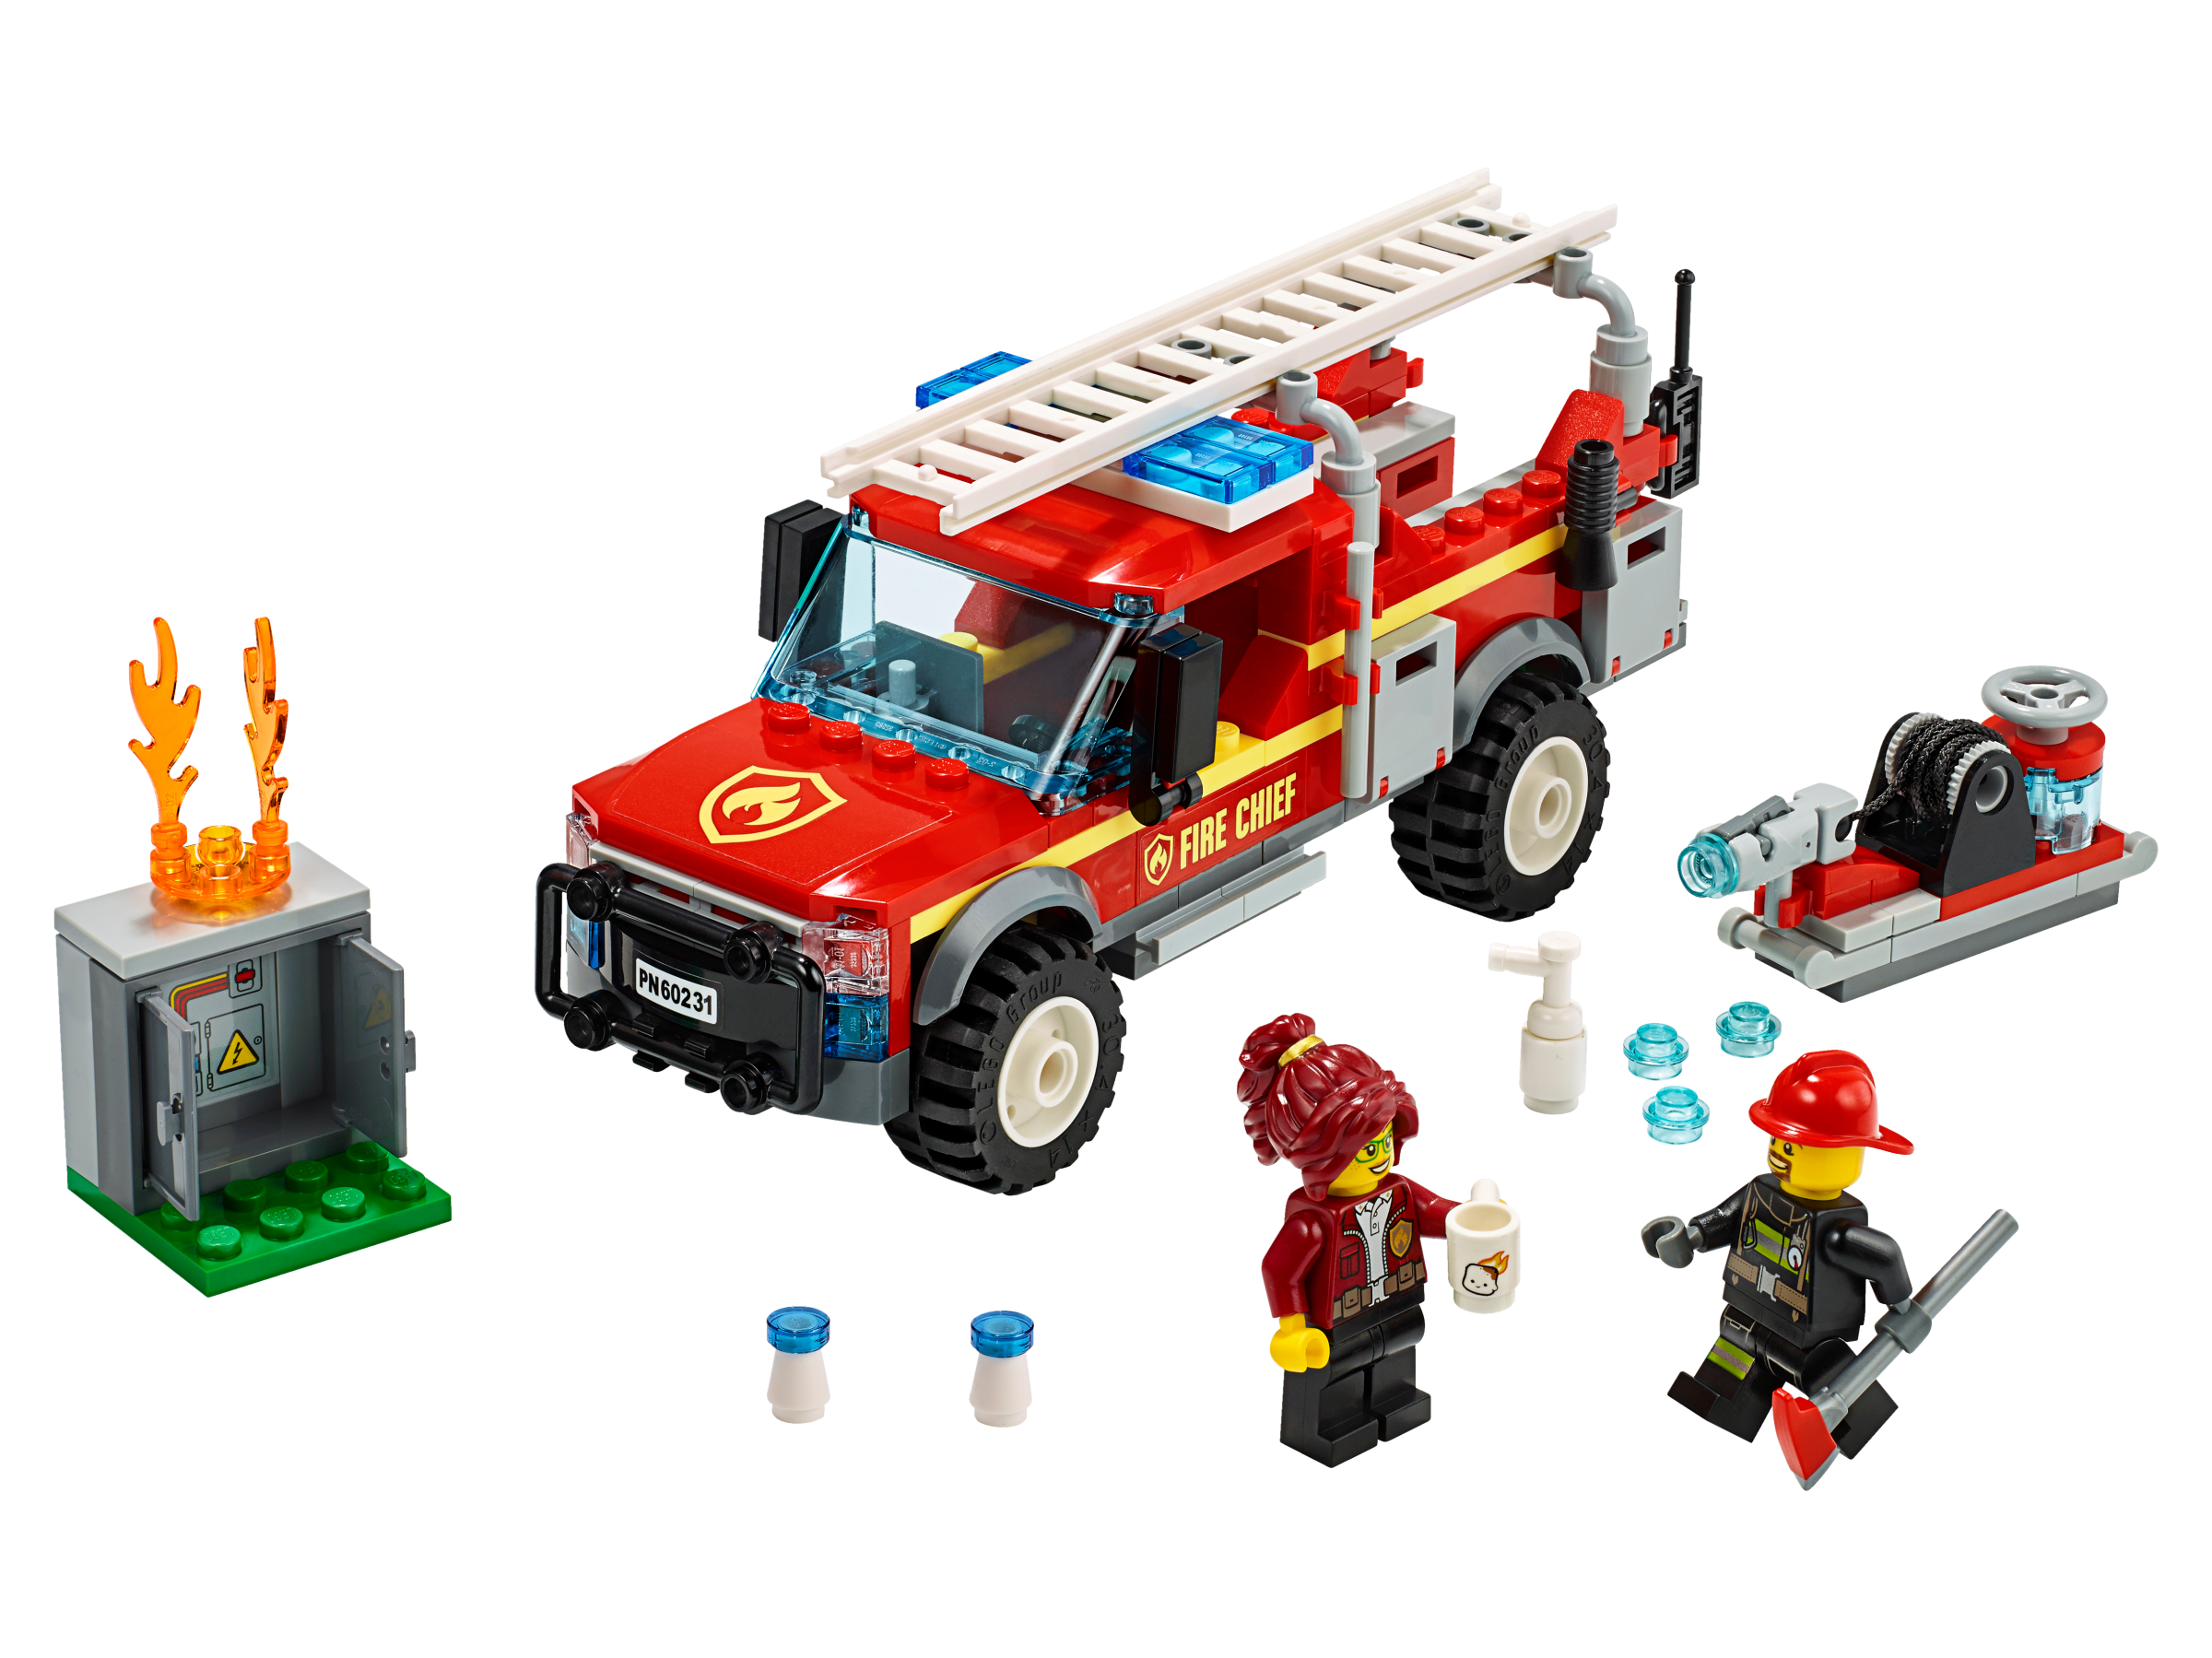 LEGO City - Camionul de interventie al comandantului pompierilor 60231